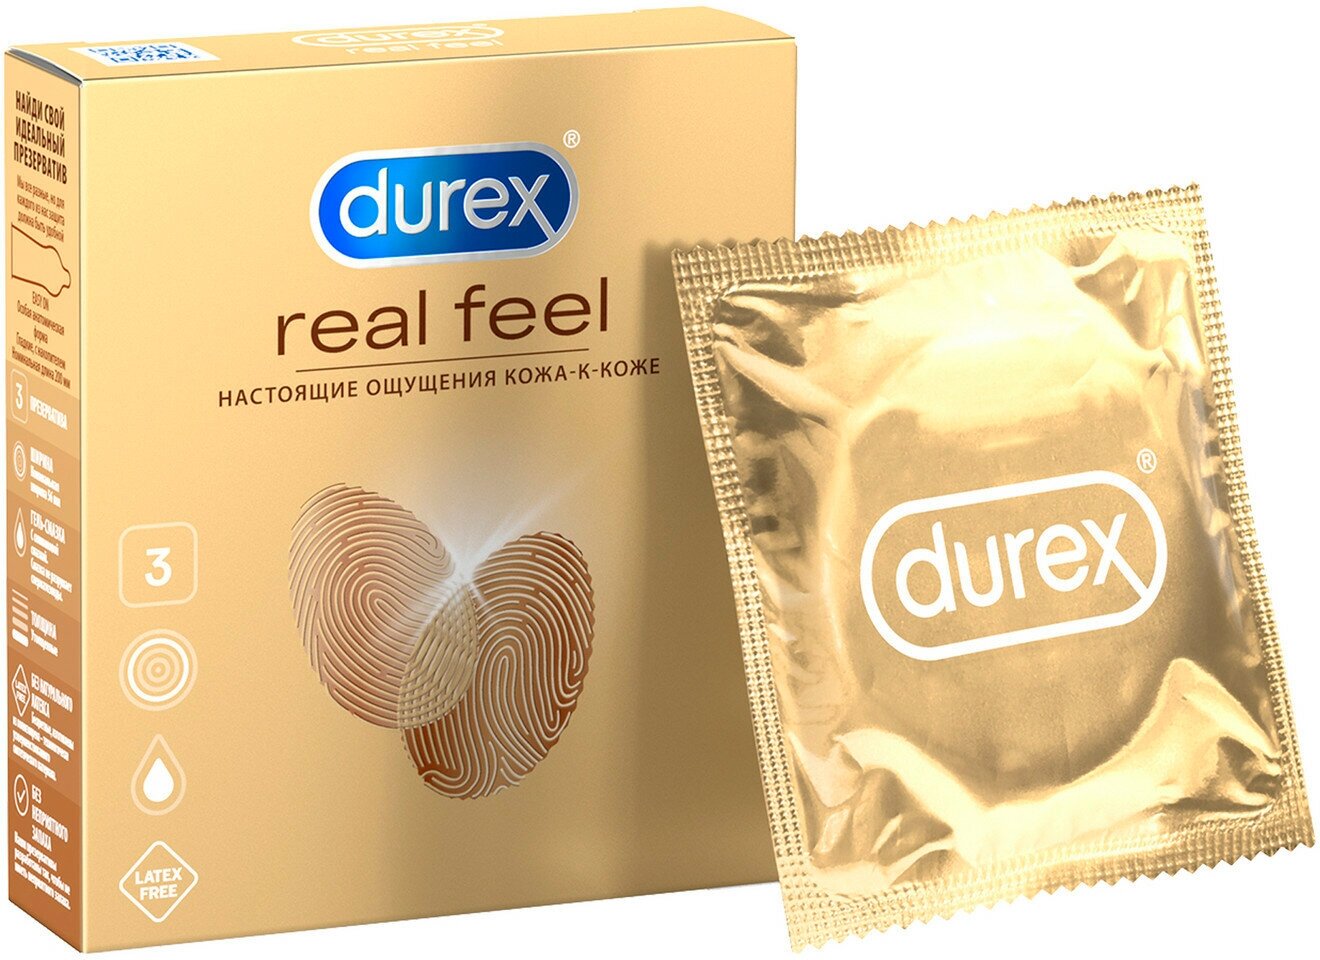 Презервативы Durex Real Feel для естественных ощущений, безлатексные 3 шт.